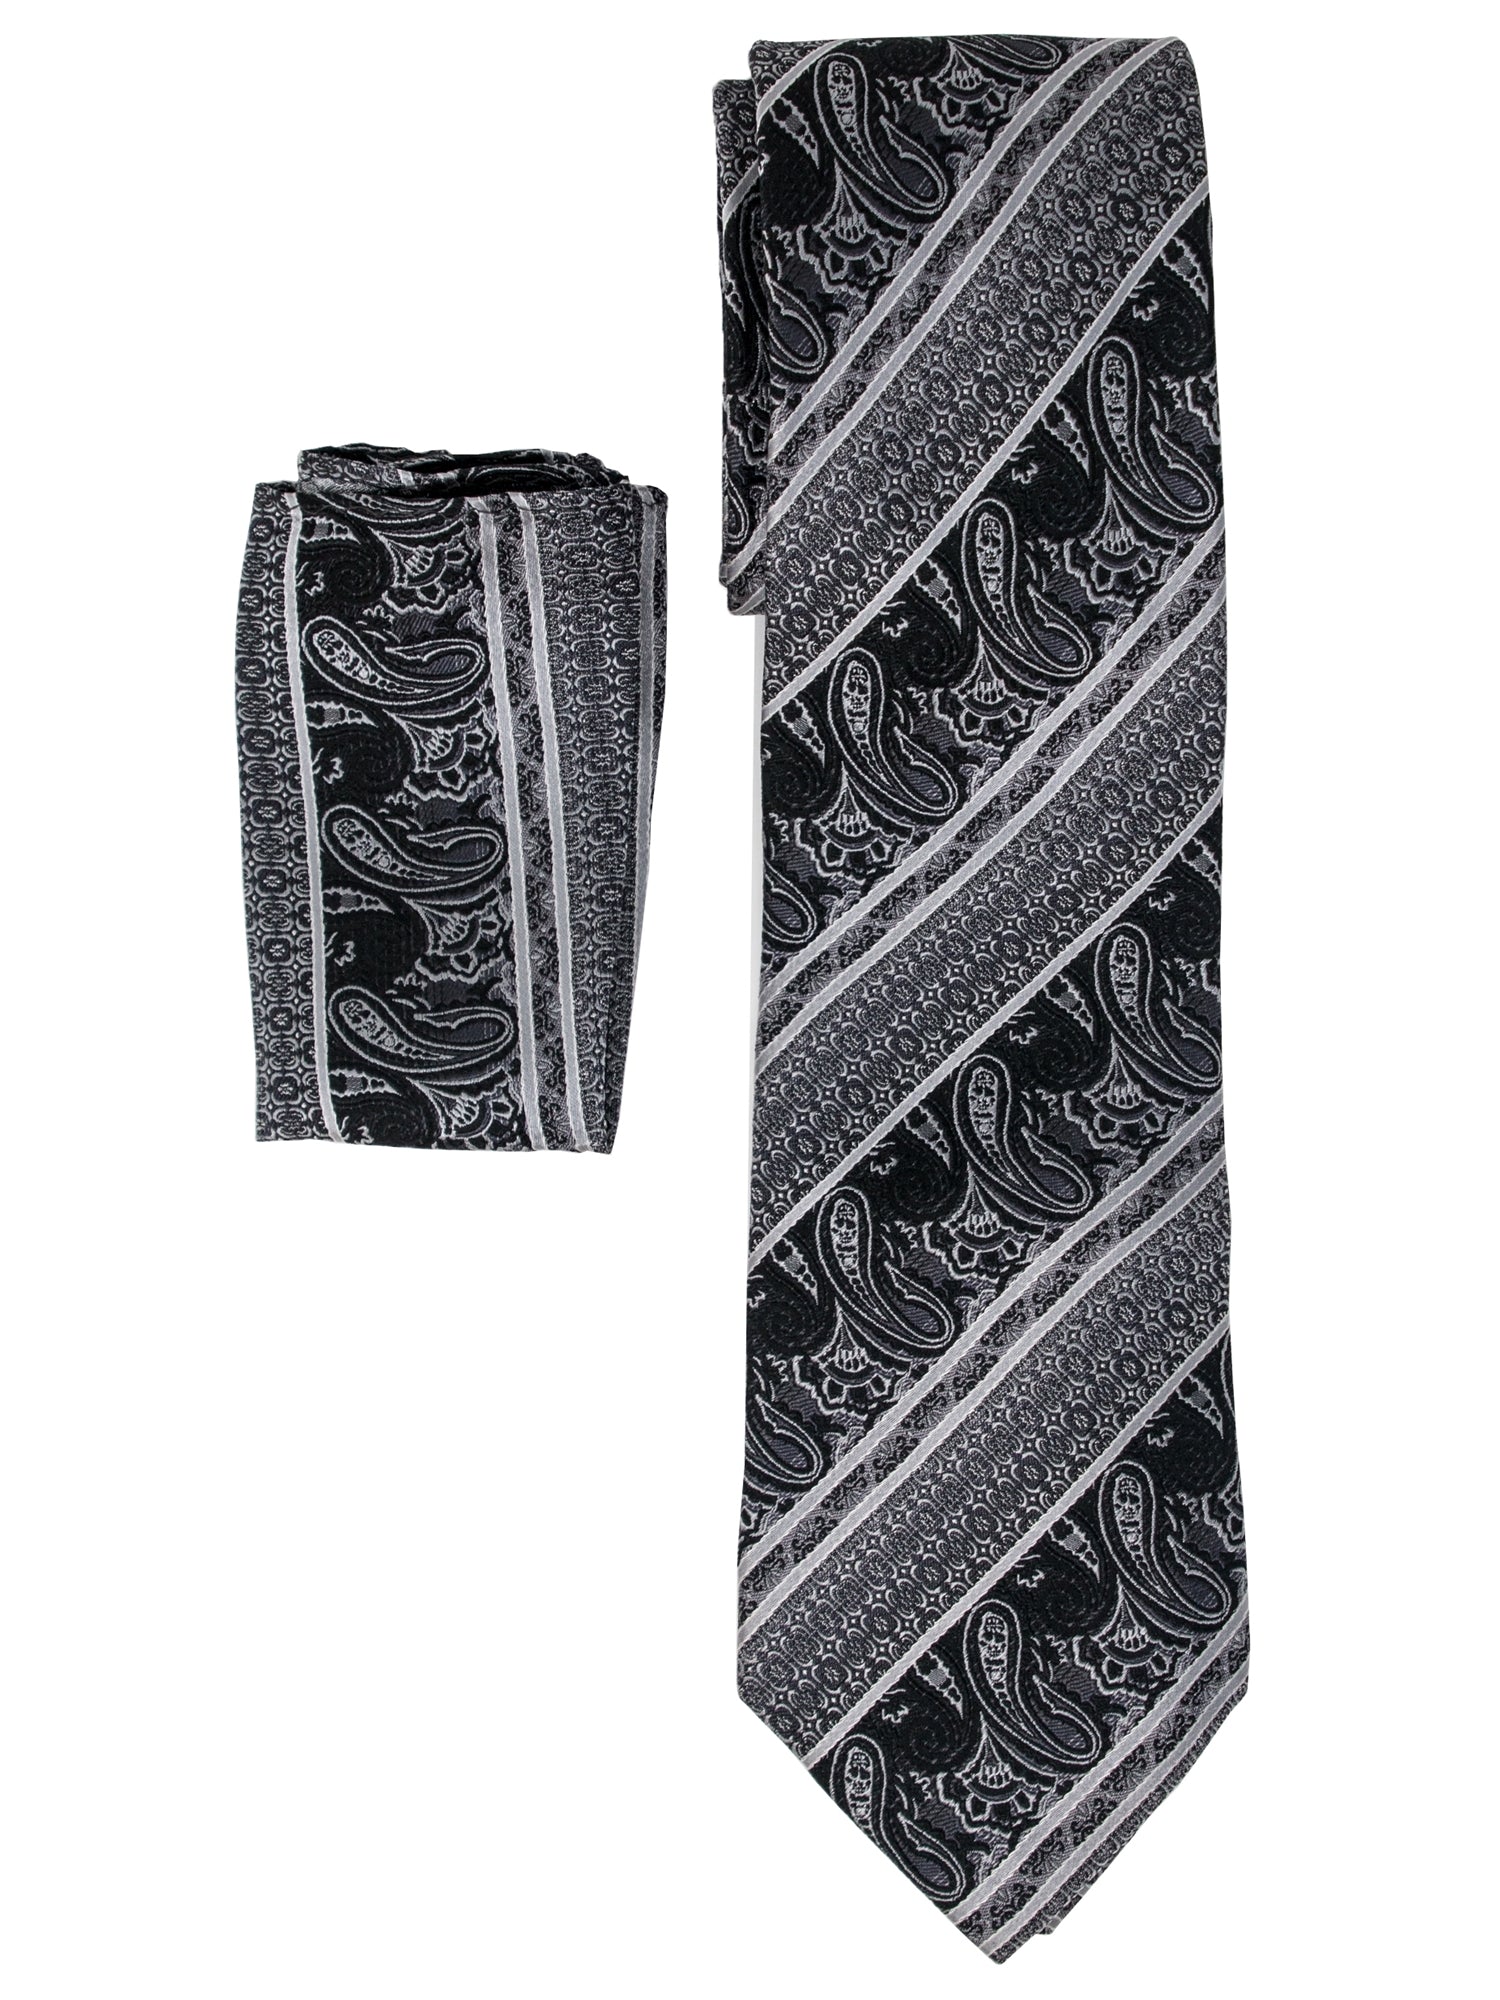 Men's Silk Woven Wedding Neck Tie With Handkerchief Neck Tie TheDapperTie Black And Grey Paisley Regular 